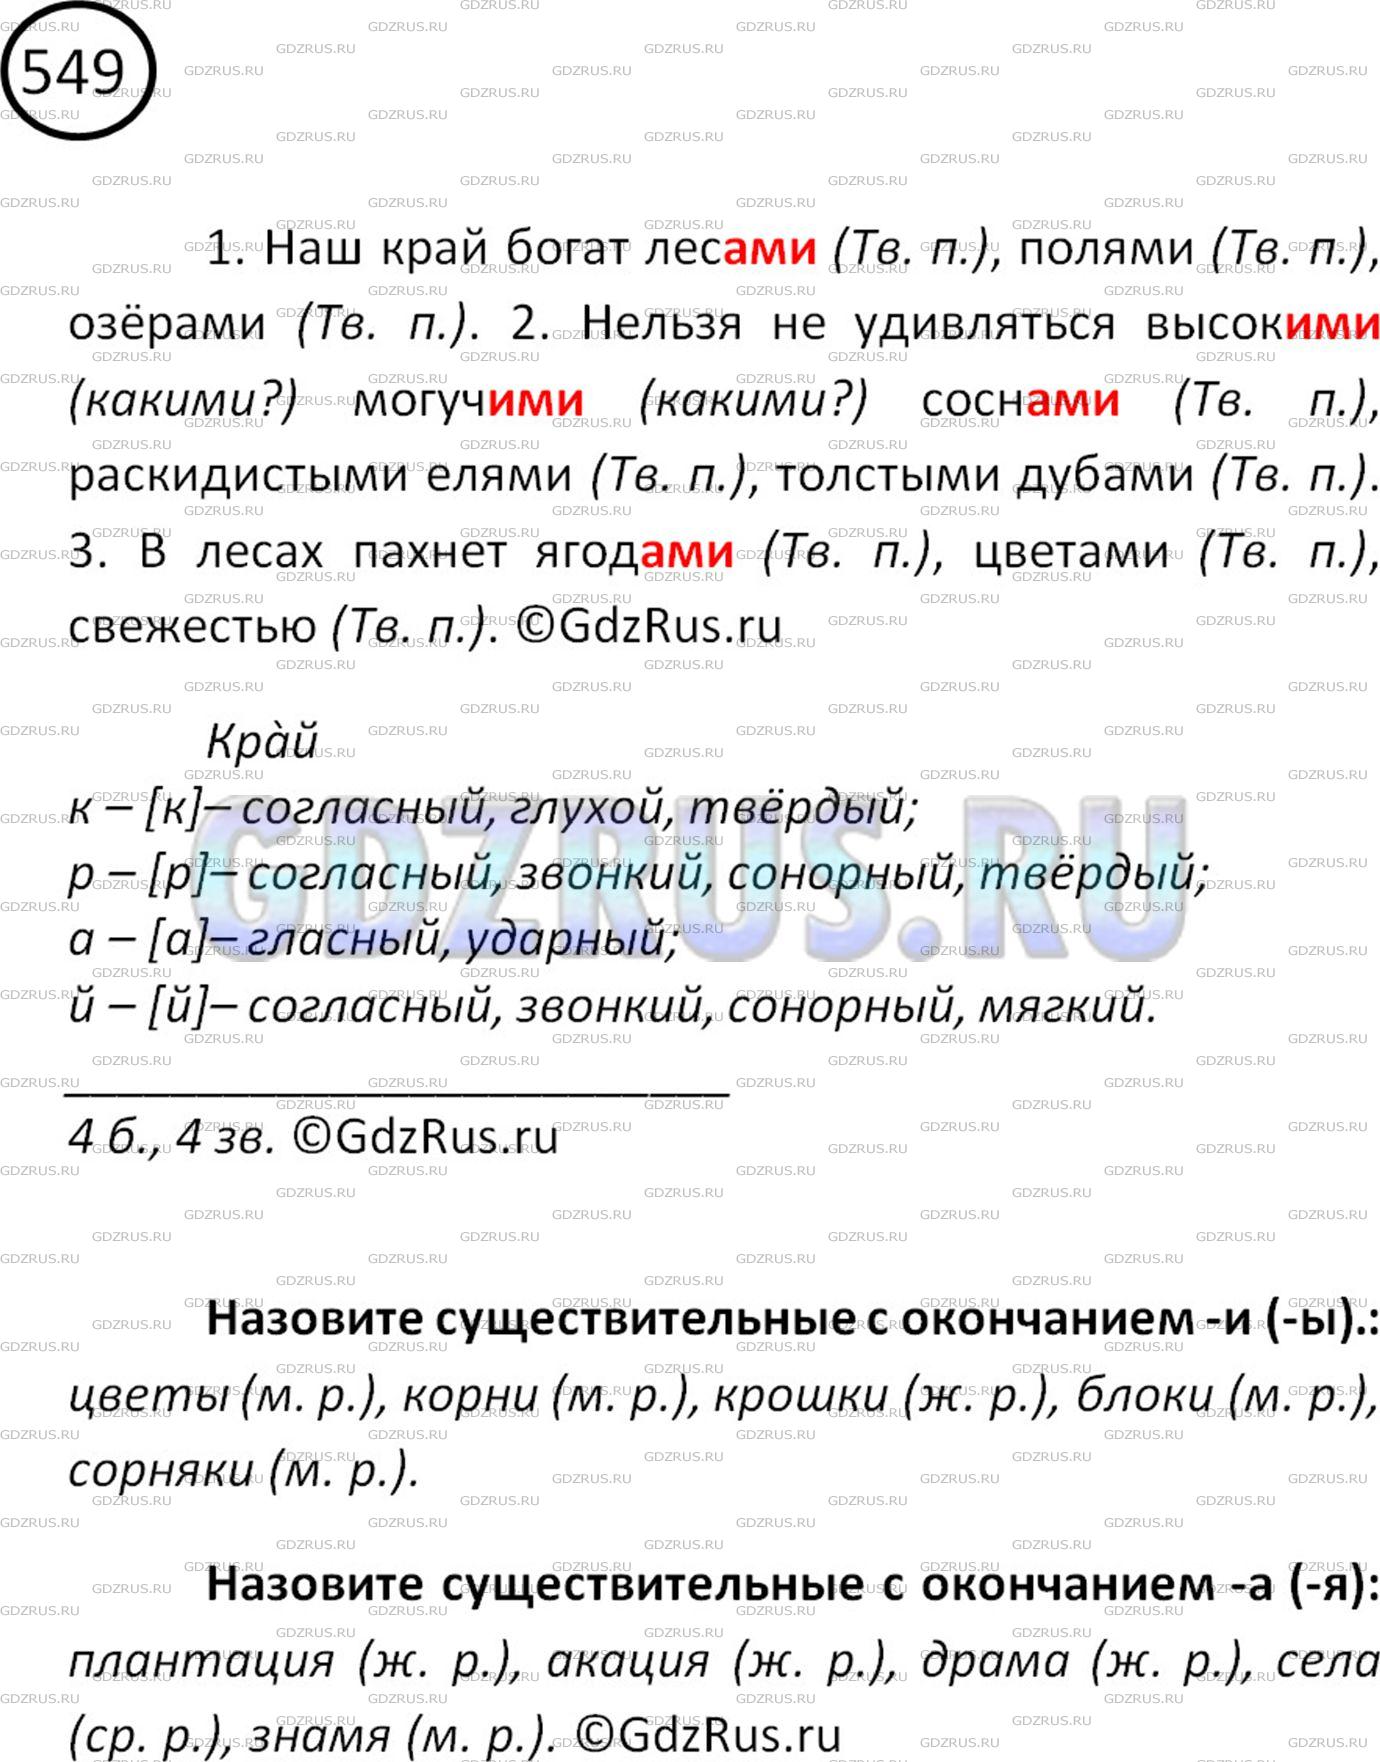 Фото решения 2: ГДЗ по Русскому языку 5 класса: Ладыженская Упр. 549